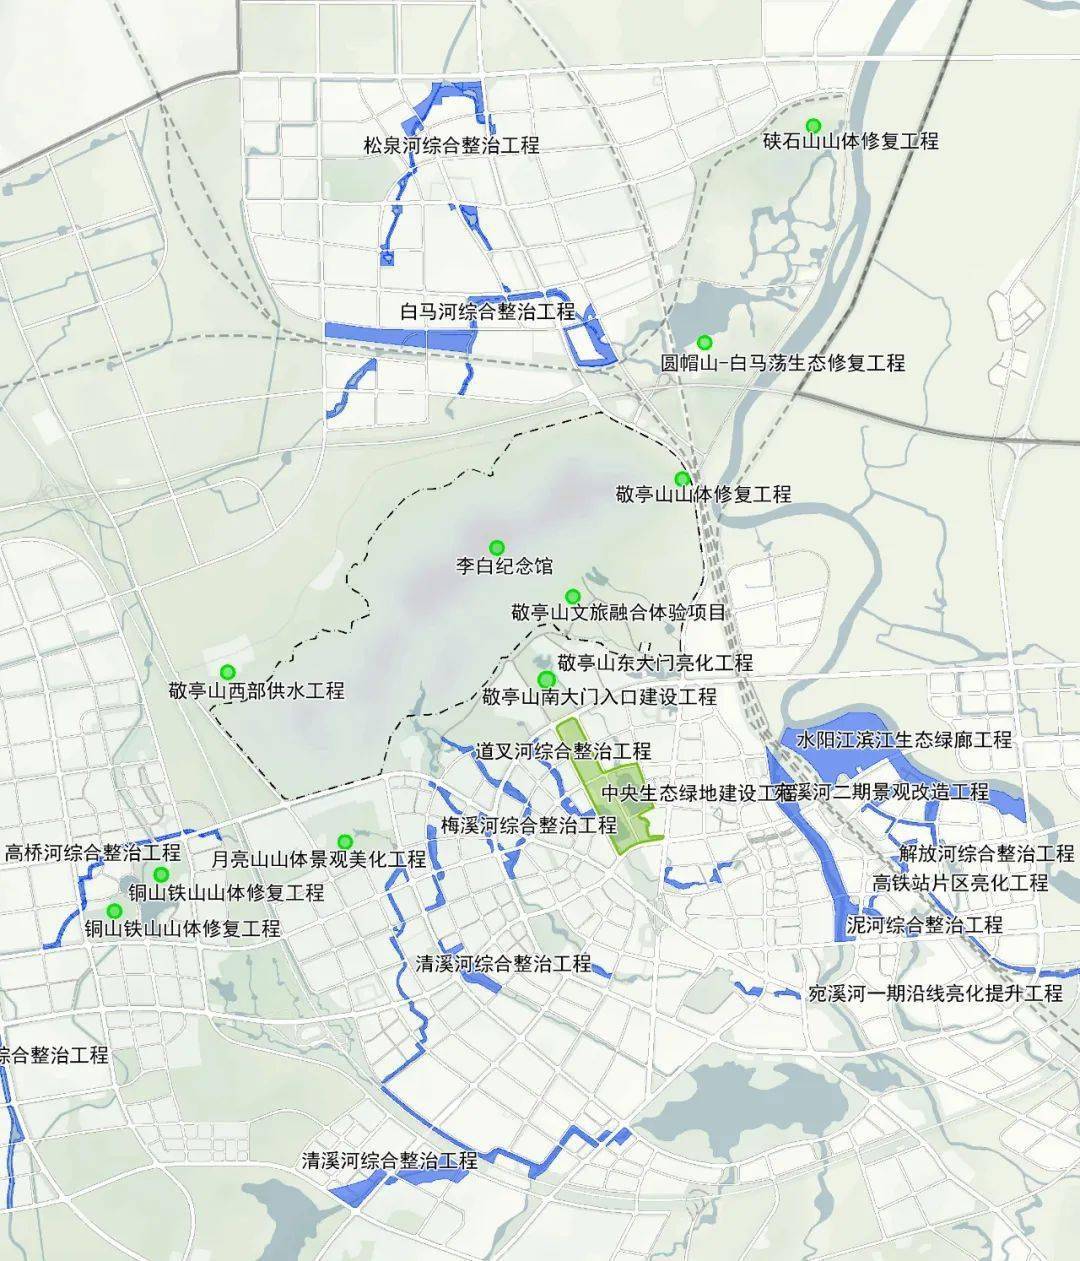 宣城中心城区规划公示!涉及288平方公里